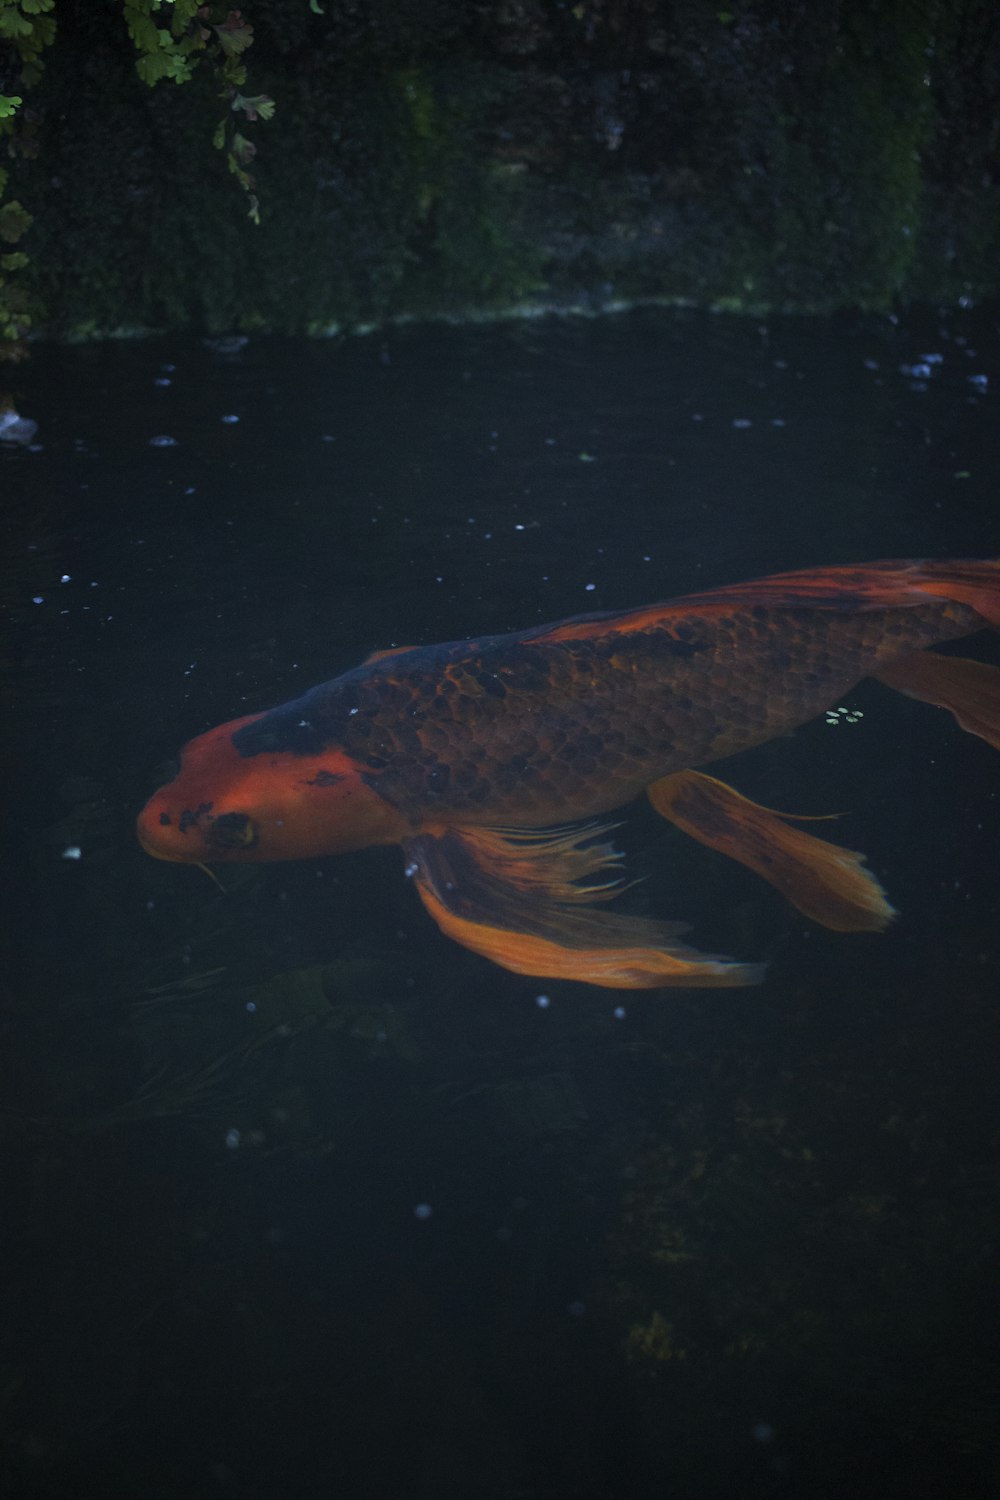 koi fish on pond